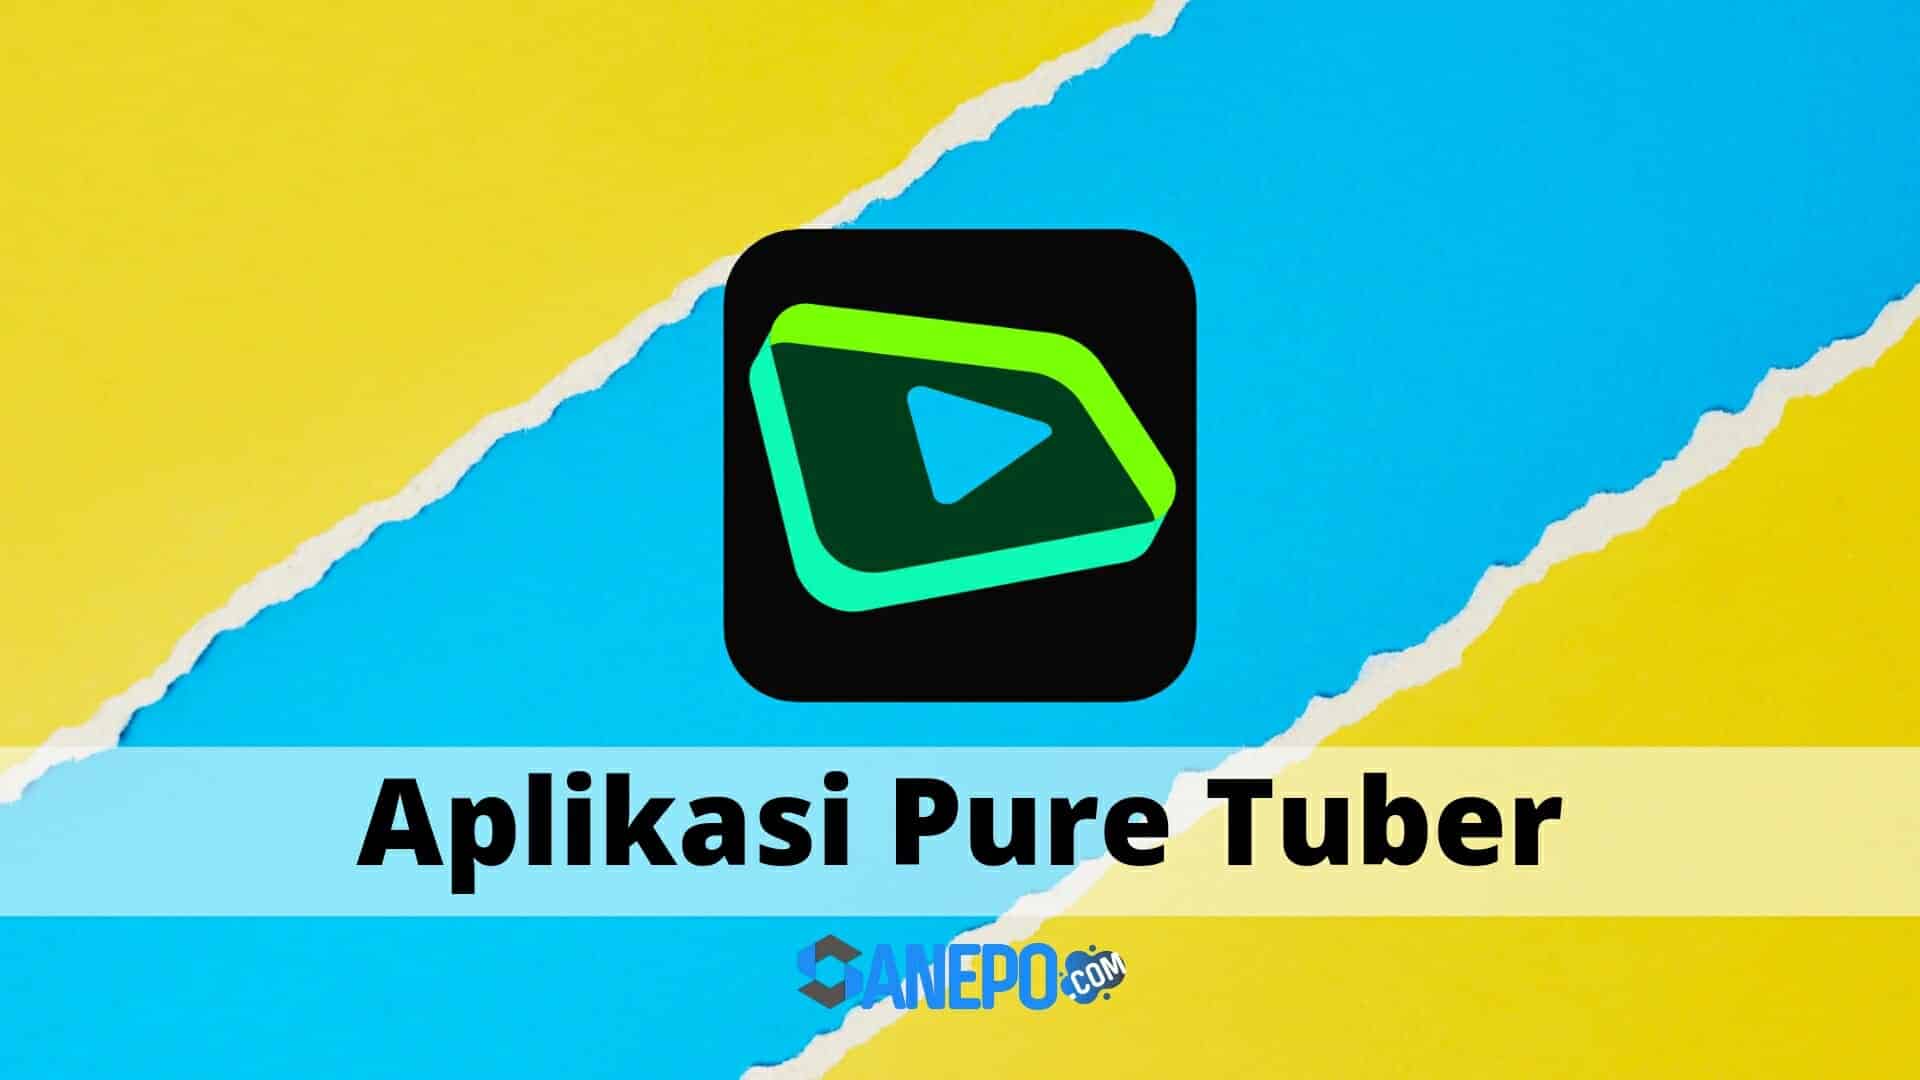 Pure tuber apk download